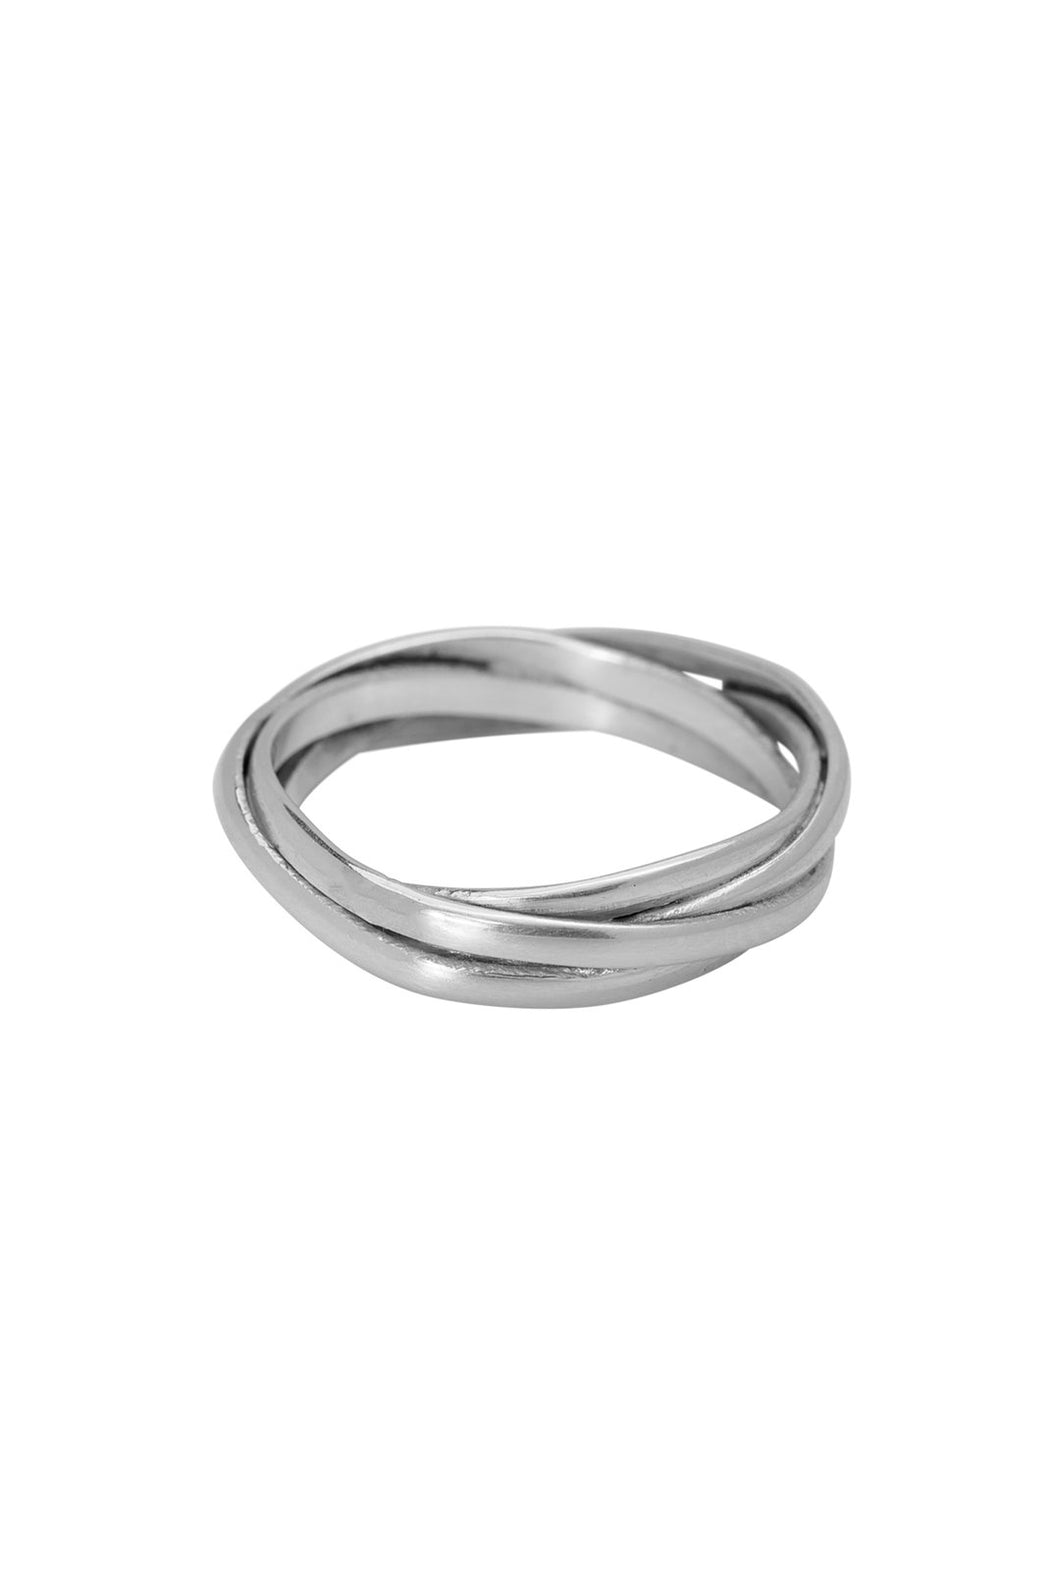 drie ringen together xzota ring | echt zilver